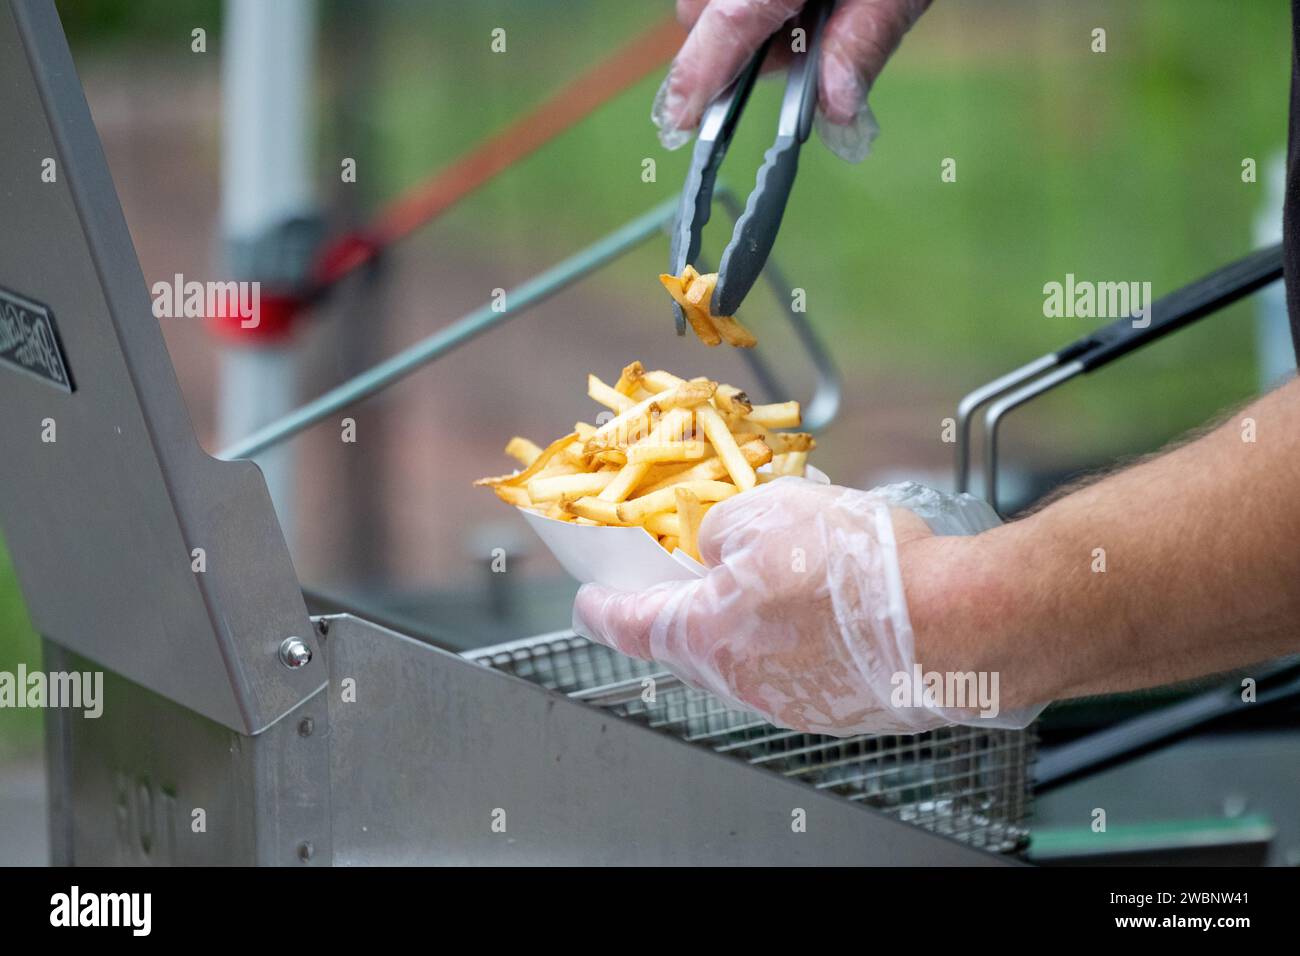 Eine Person serviert frische Pommes frites Stockfoto